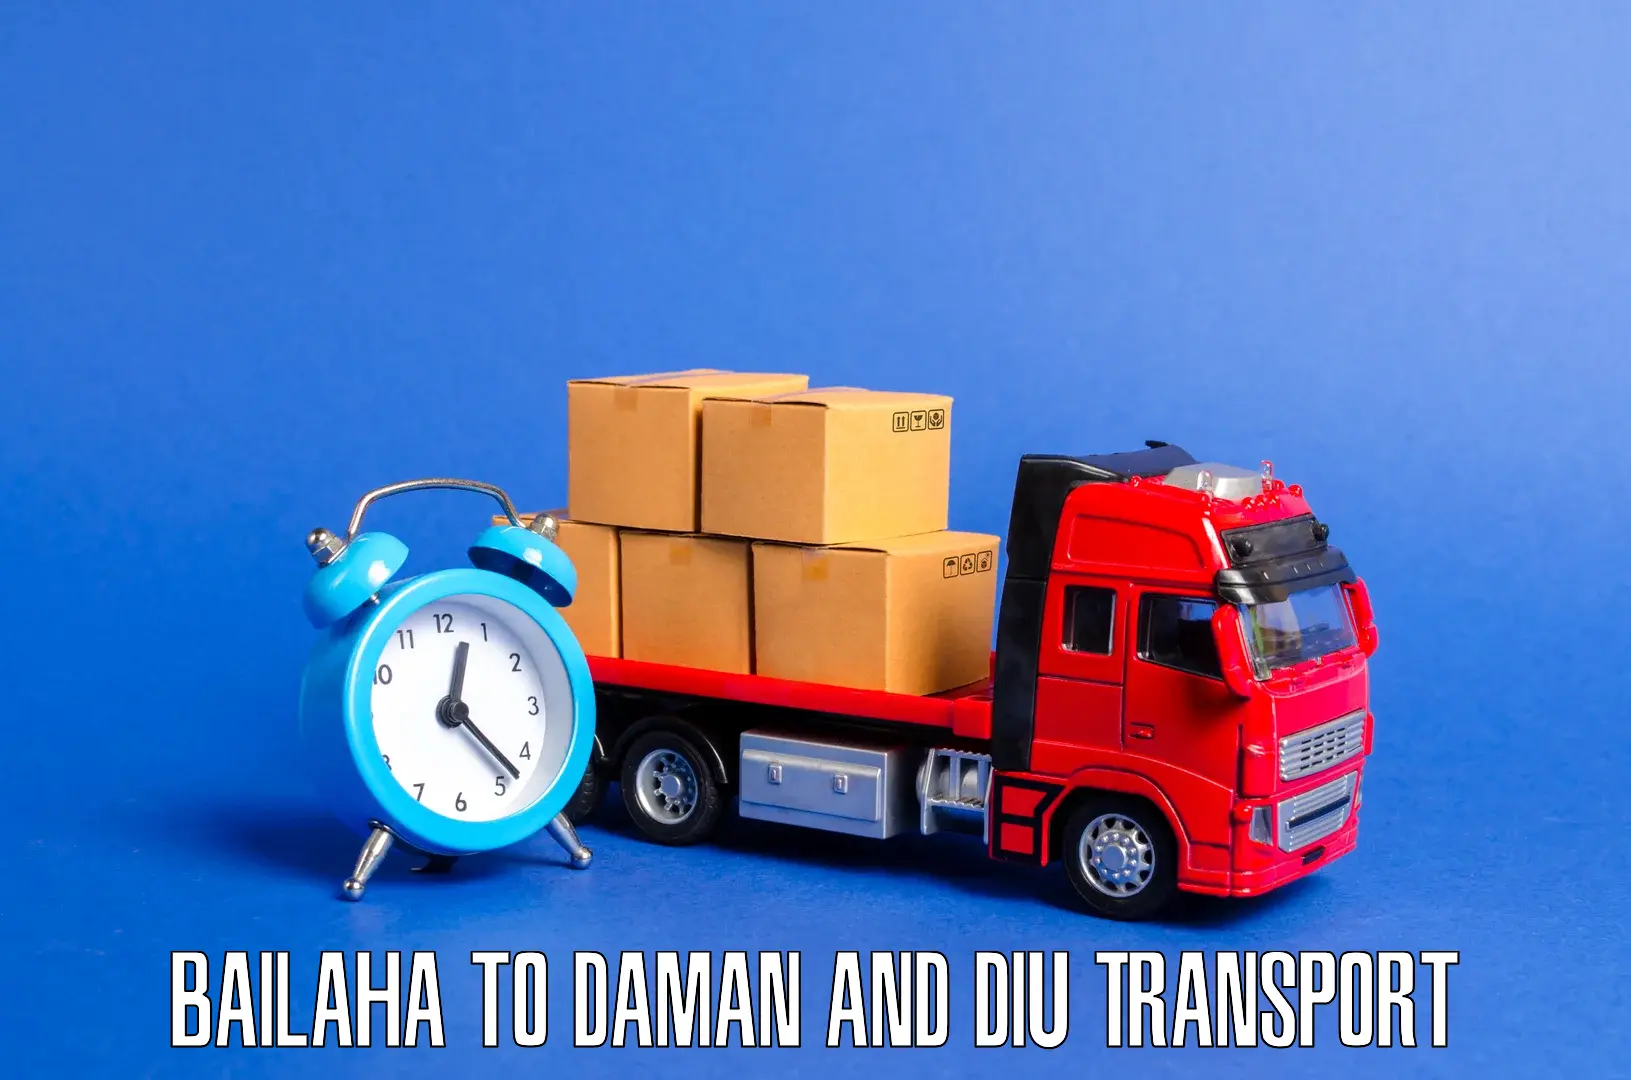 Pick up transport service Bailaha to Daman and Diu